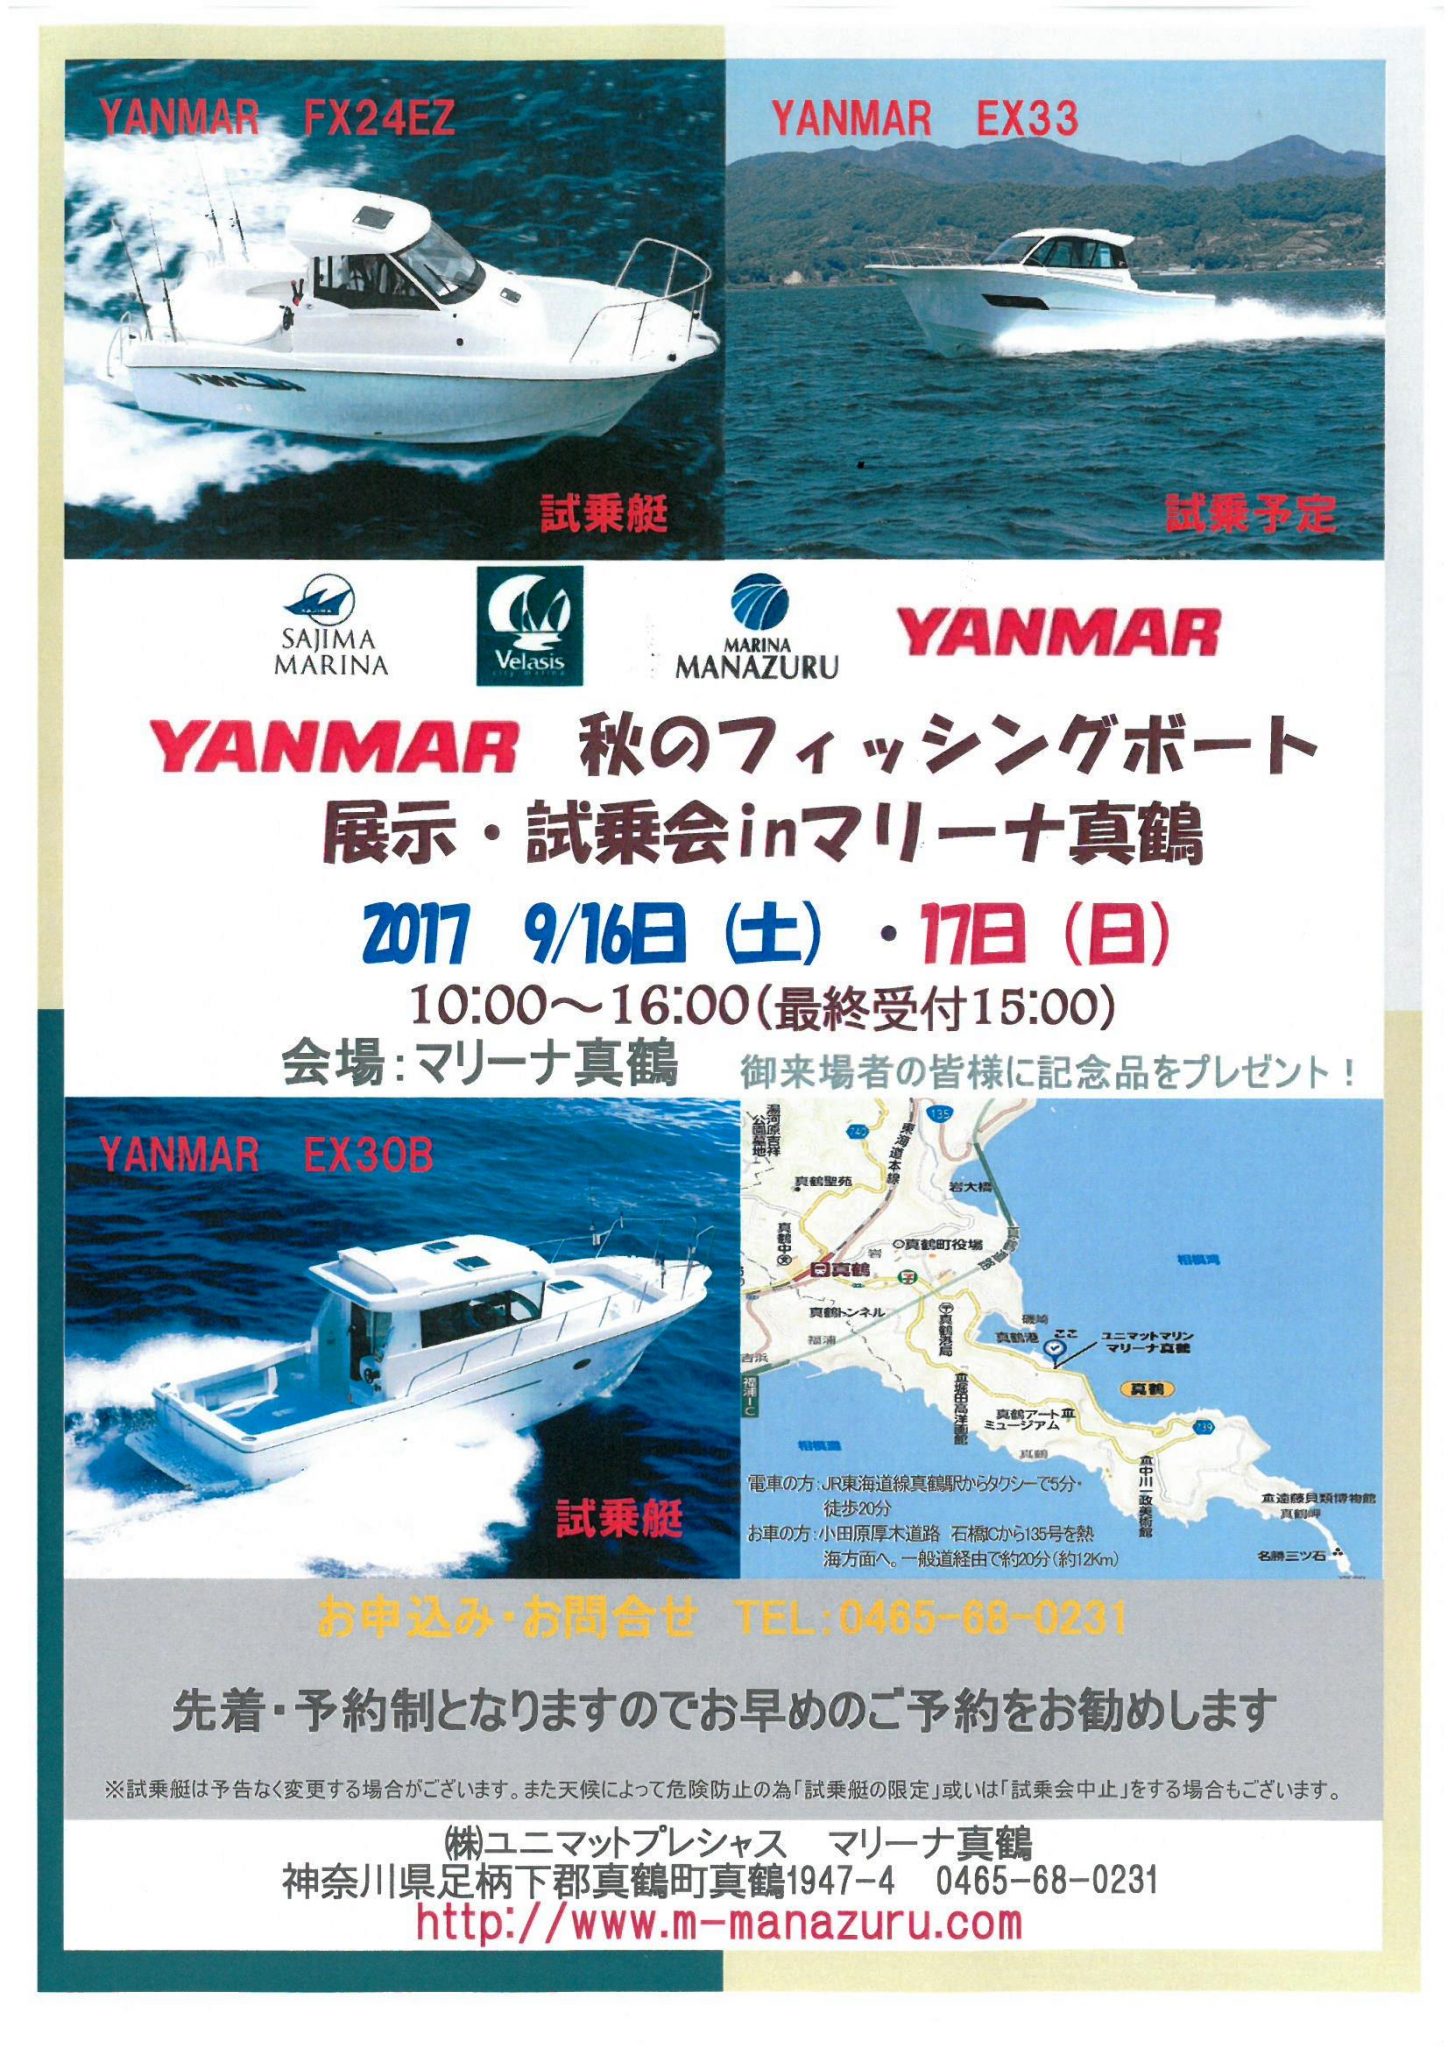 ヤンマー秋のフィッシングボート展示・試乗会inマリーナ真鶴開催のお知らせ